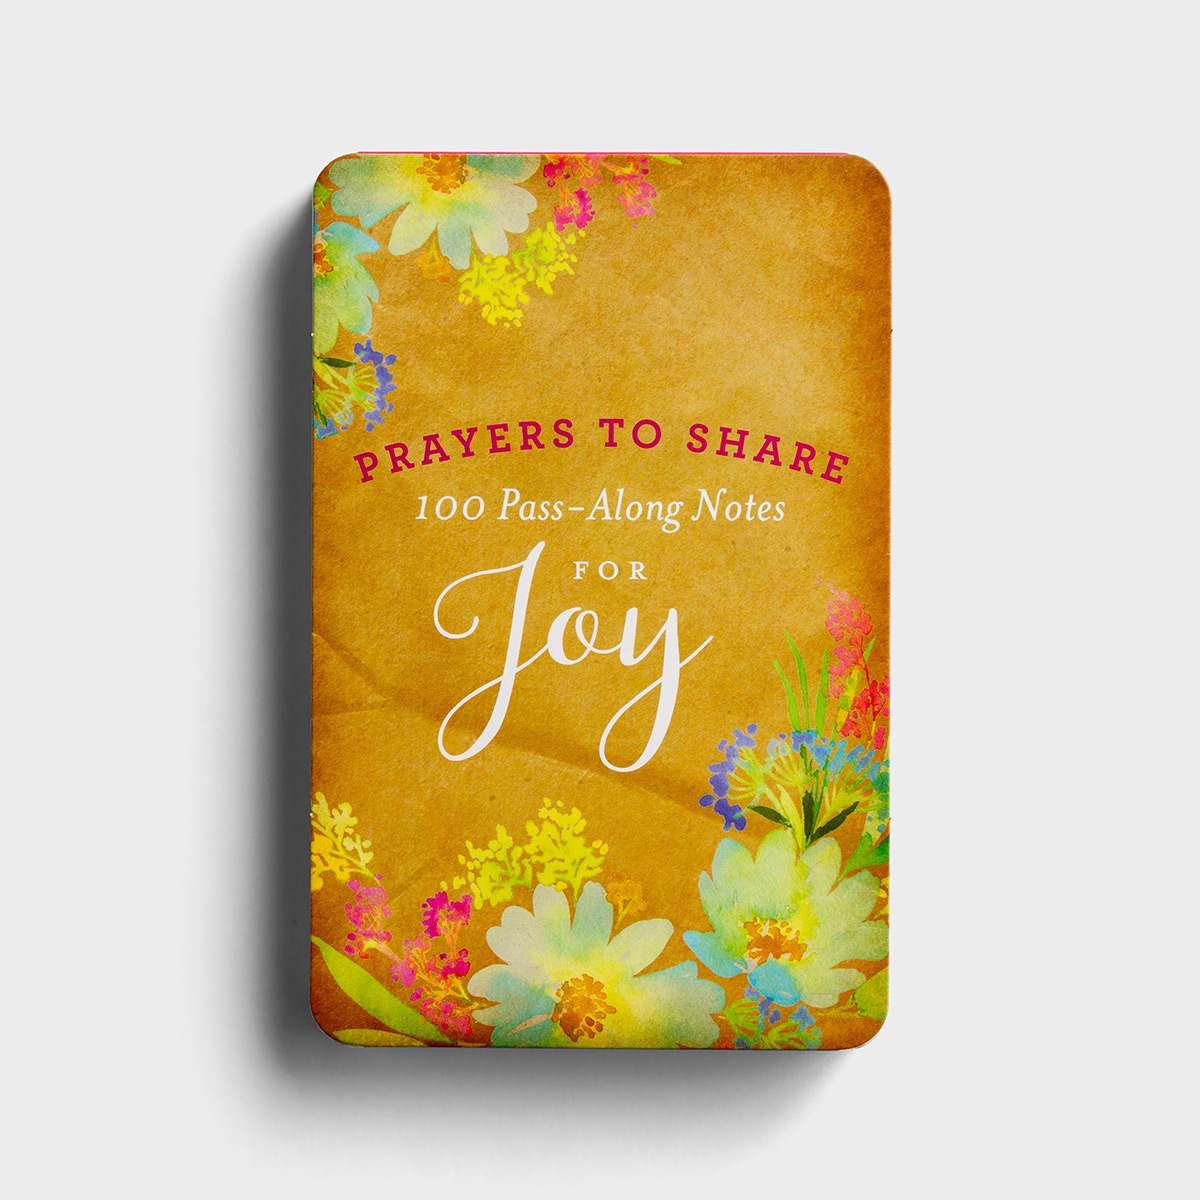 分享喜乐的祷告- 100个传递笔记